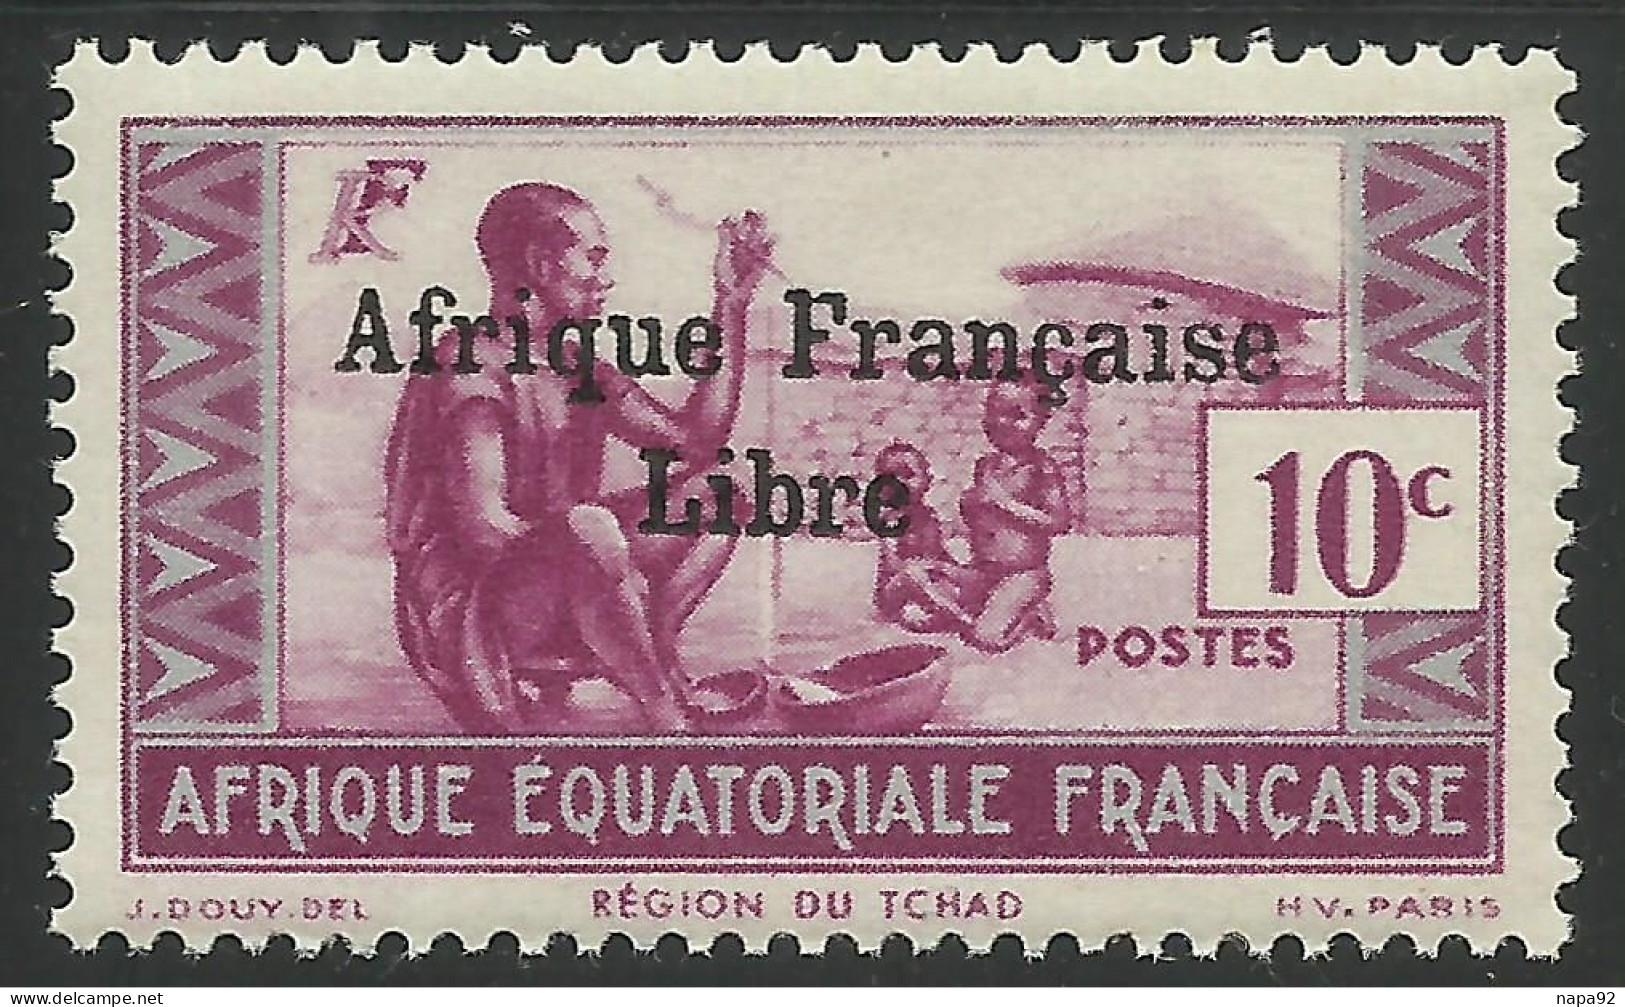 AFRIQUE EQUATORIALE FRANCAISE - AEF - A.E.F. - 1941 - YT 160** - 2ème TIRAGE - Ongebruikt